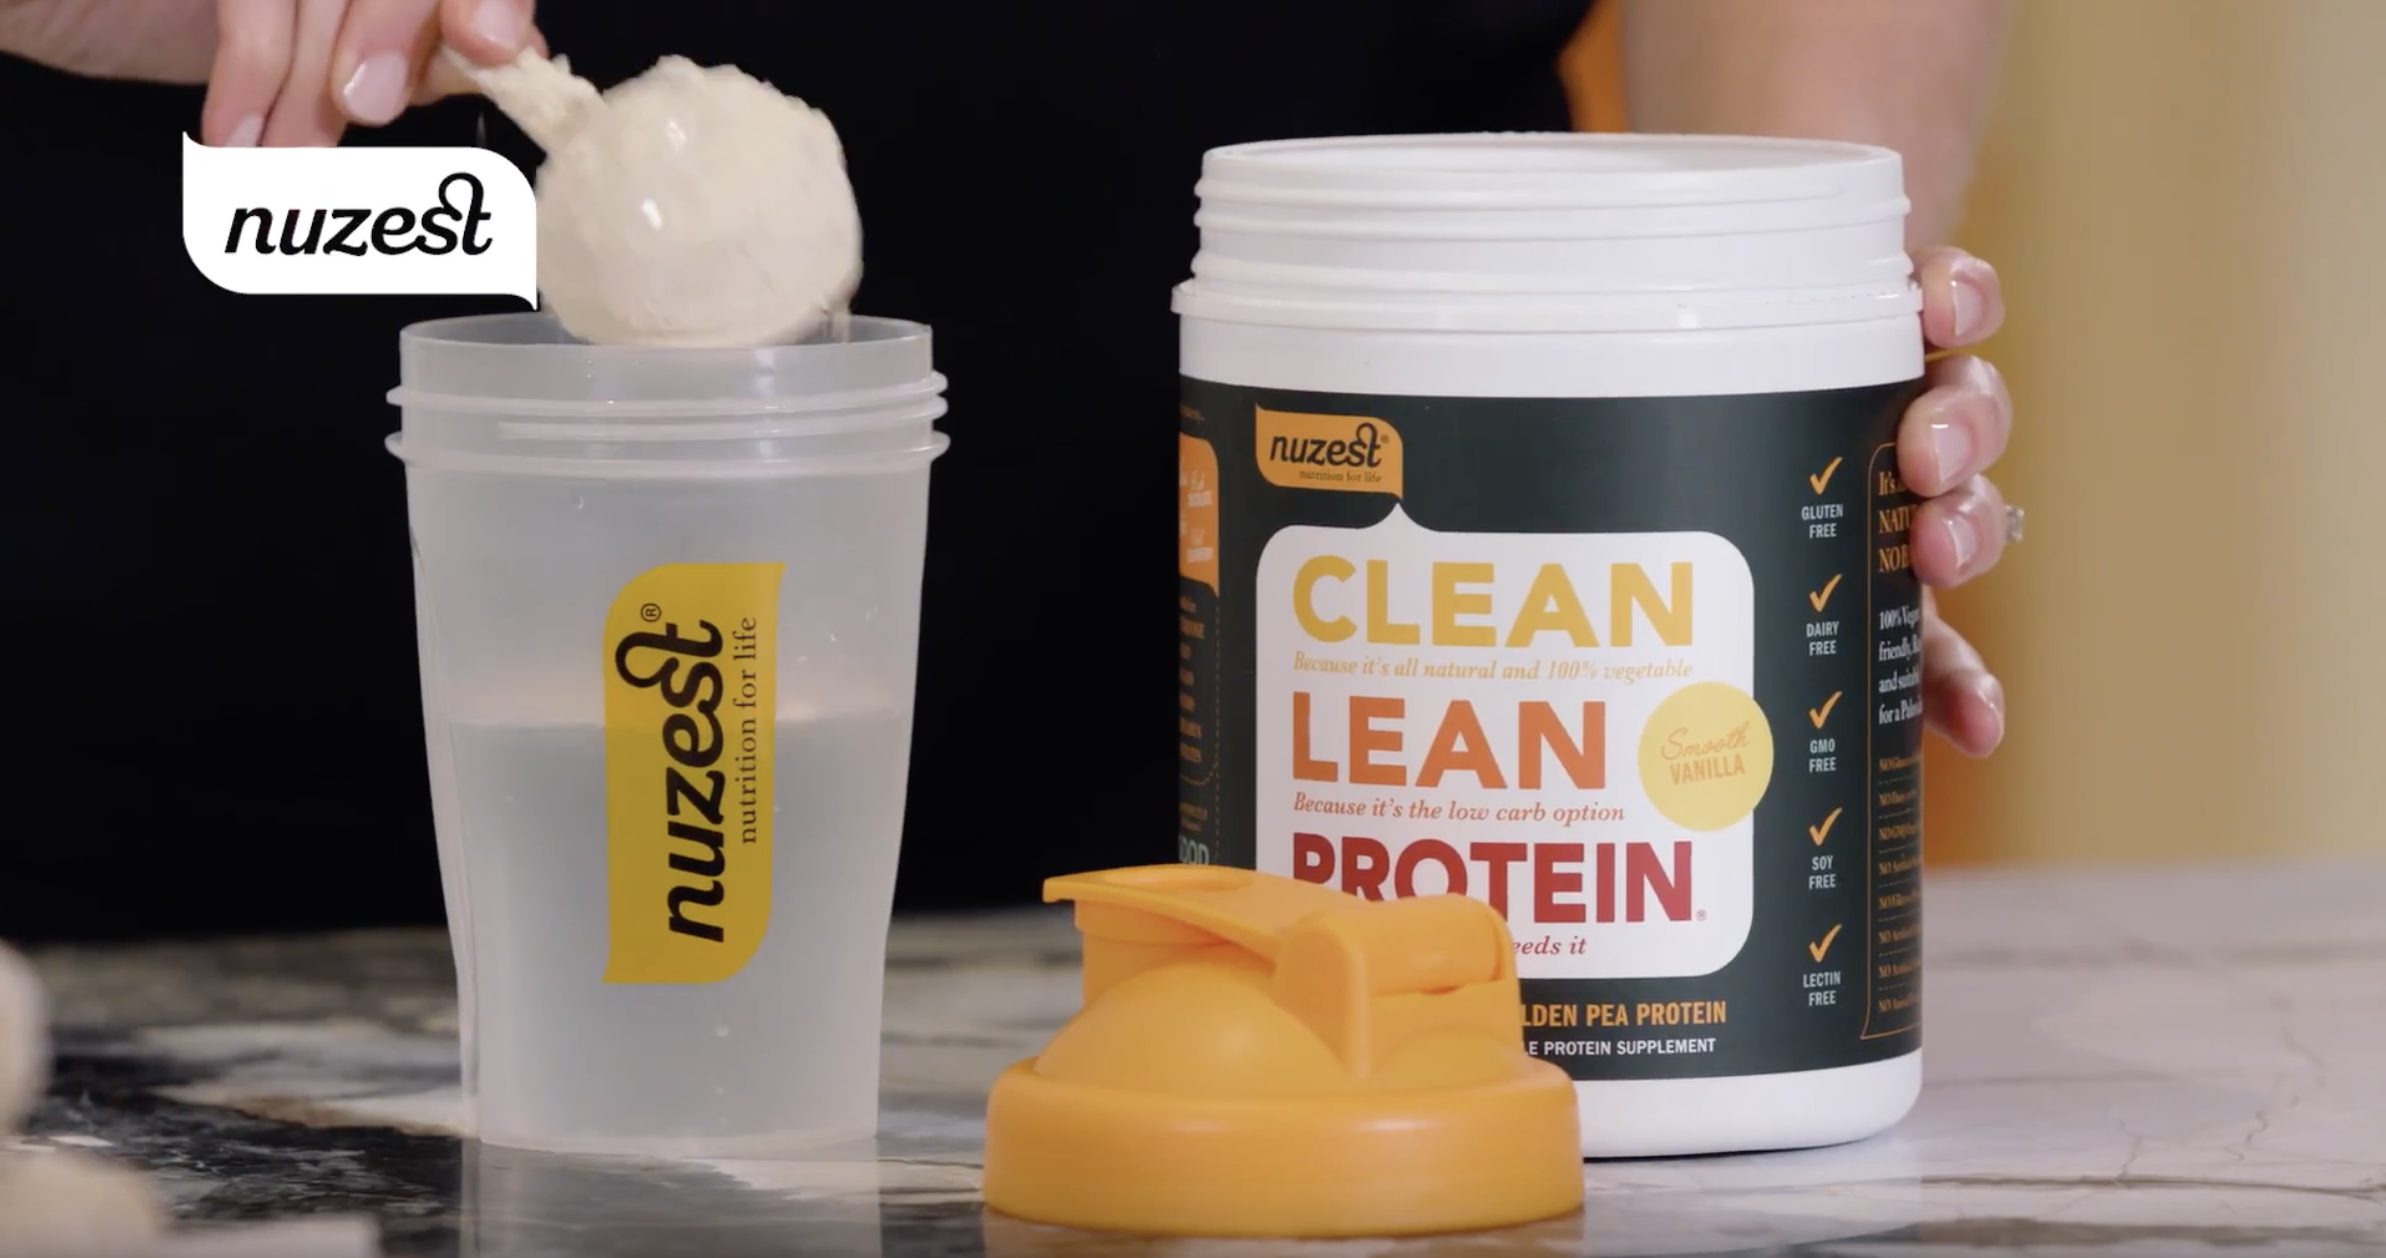 Clean Lean Protein Sachets